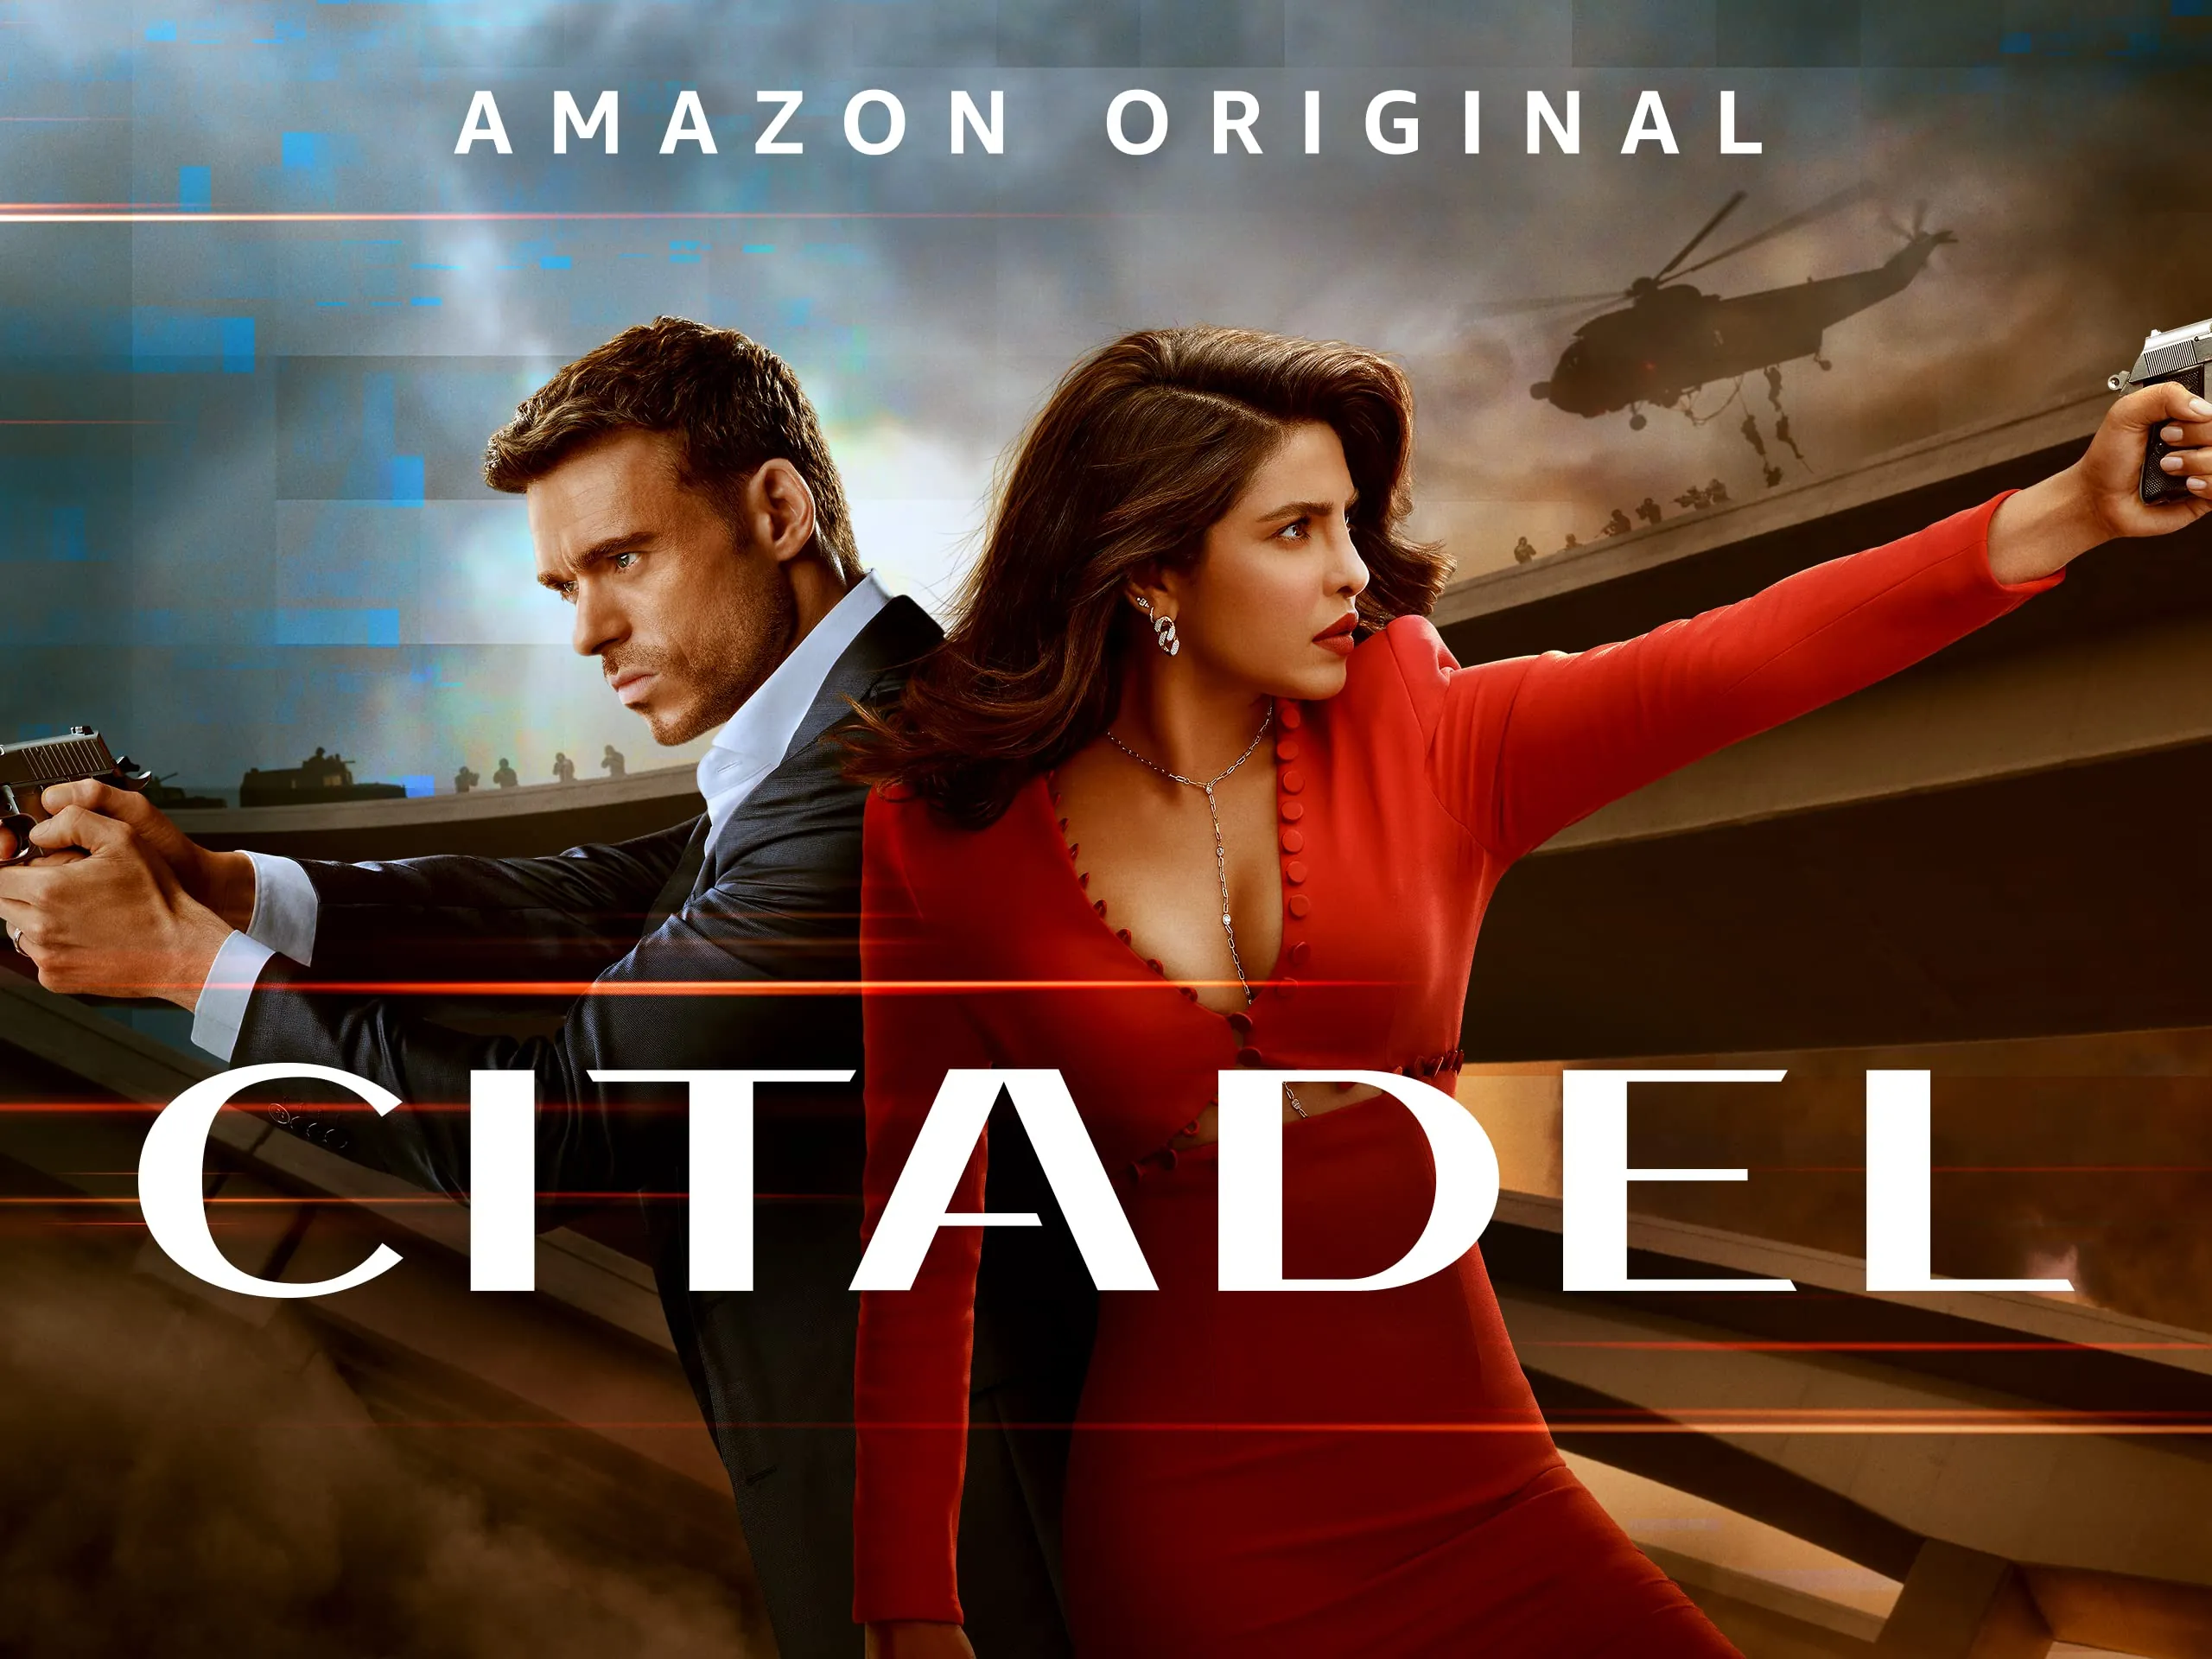 Citadel season 1